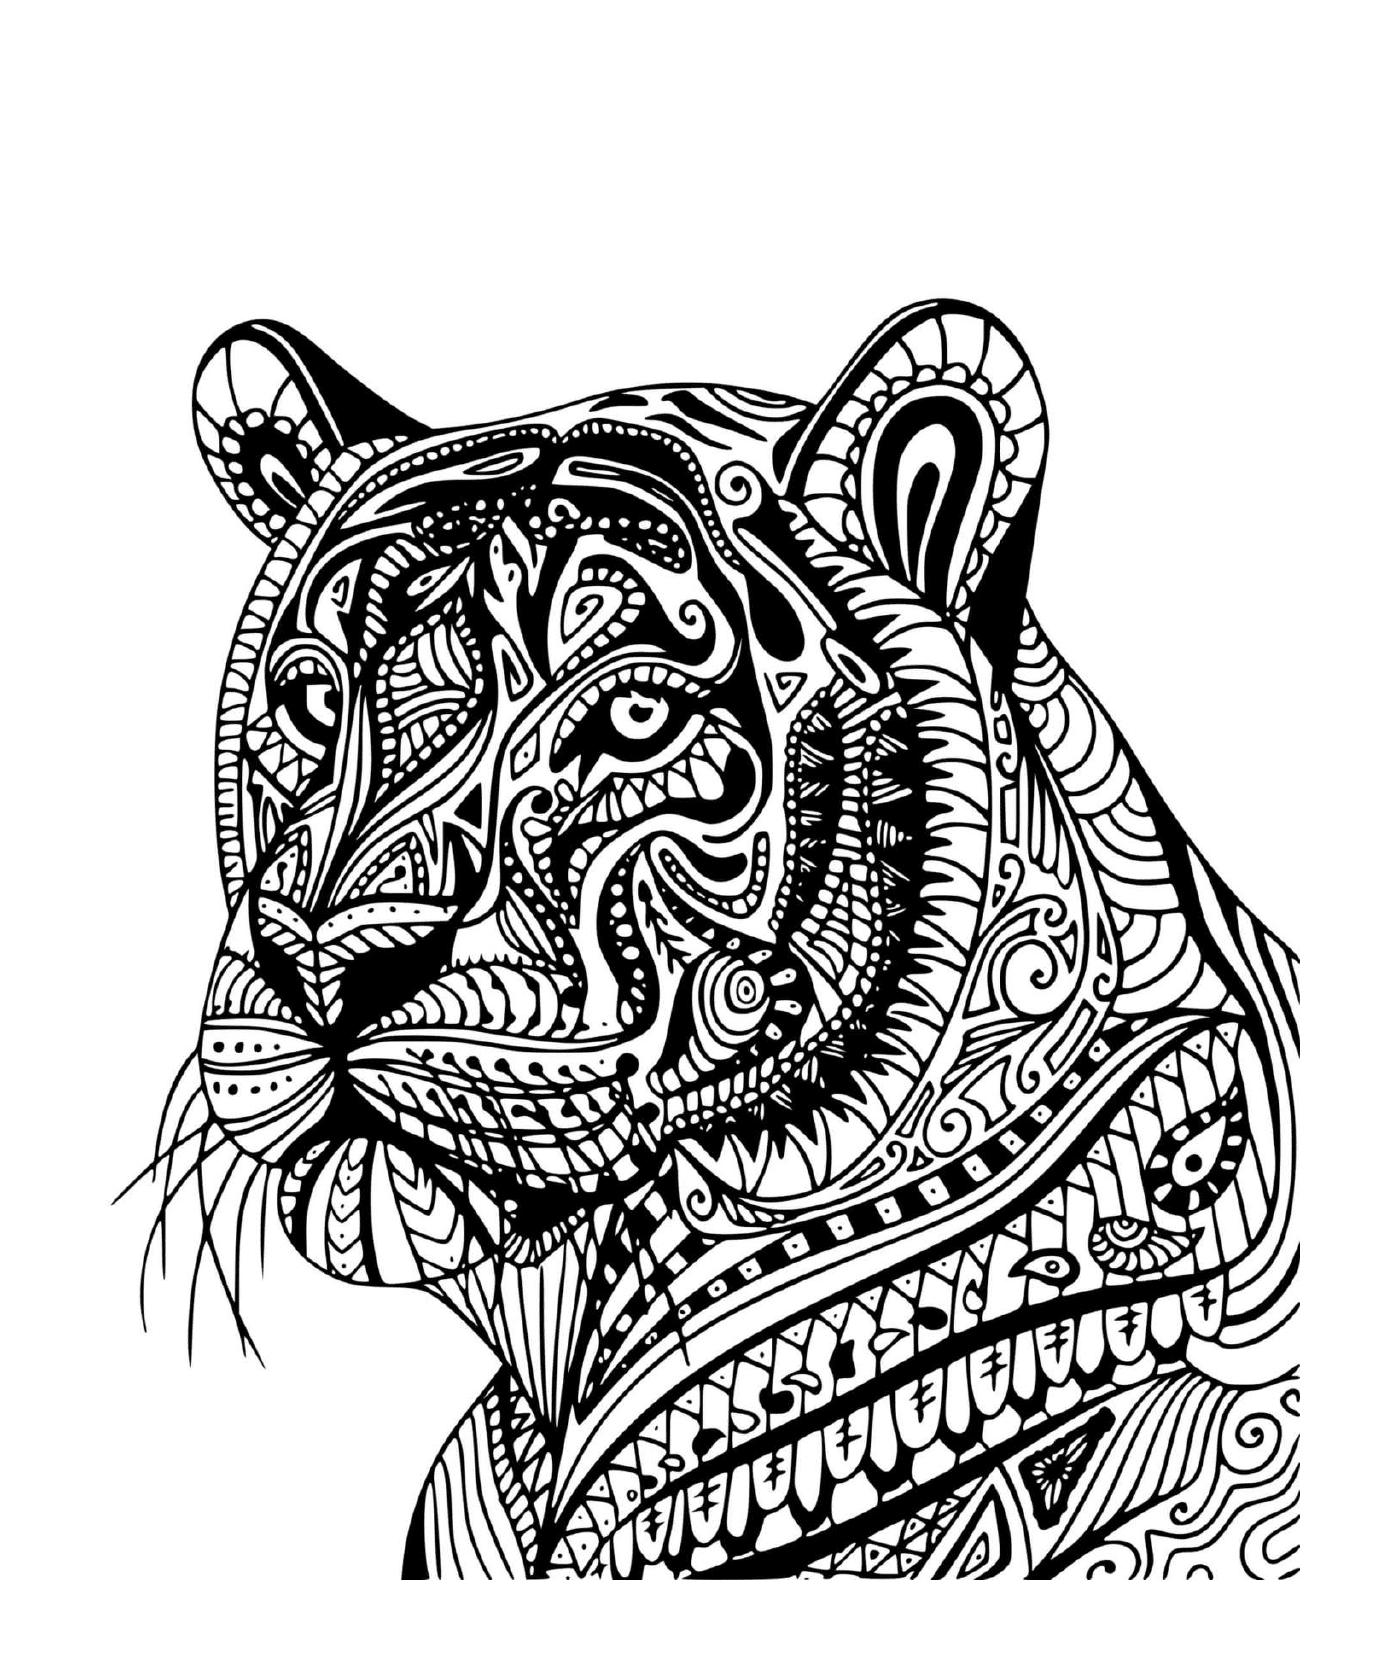  Ein erwachsener Tiger im Profil 